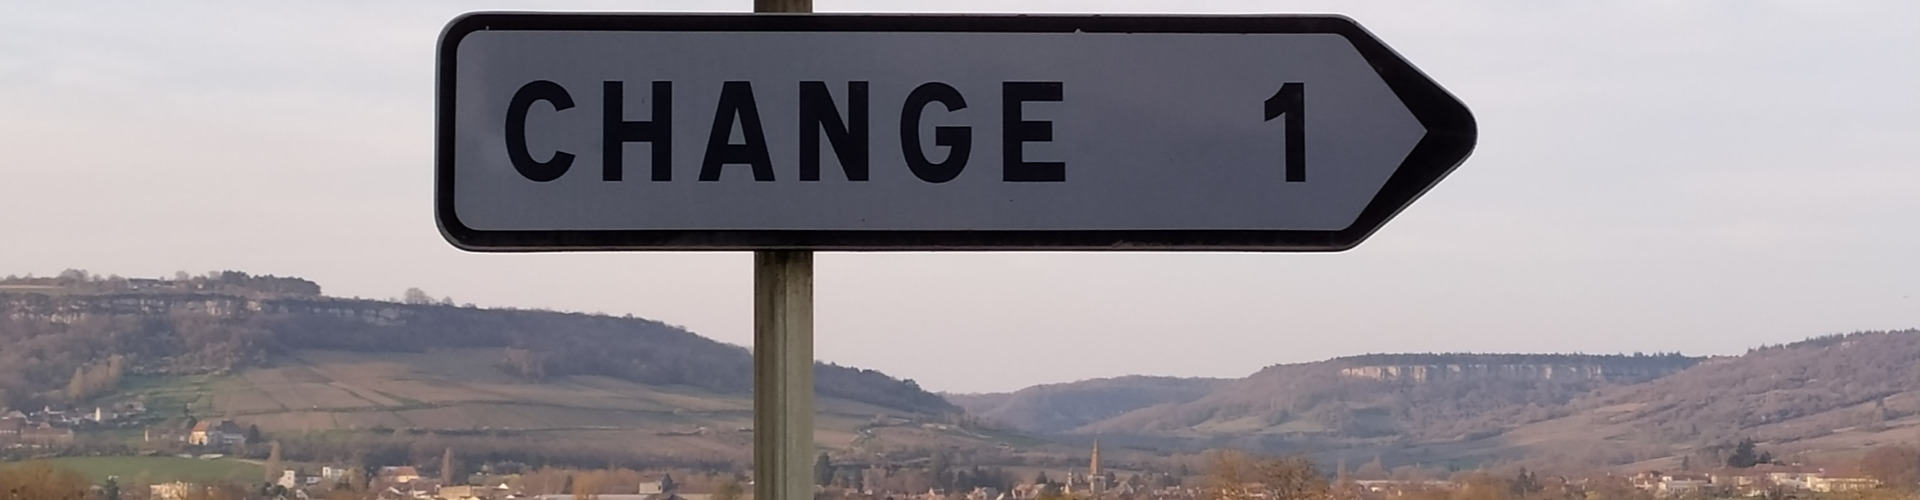 Bild von einem Straßenschild mit der Aufschrift "Changé" in Frankreich